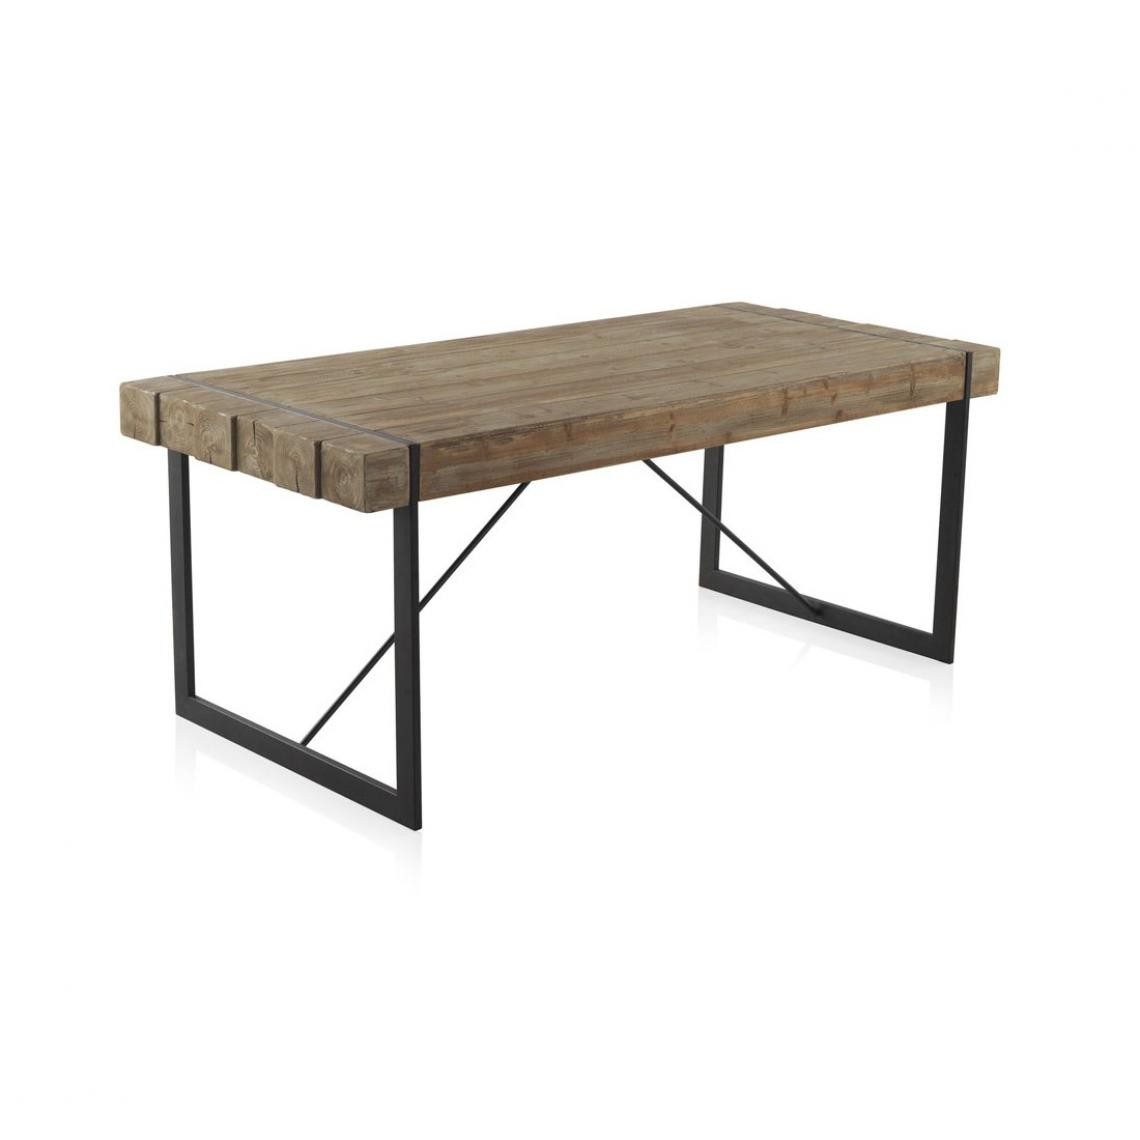 Pegane - Table à manger en bois de sapin naturel et métal coloris noir - Longueur 200 x Hauteur 80 x Largeur 90 cm - Tables à manger